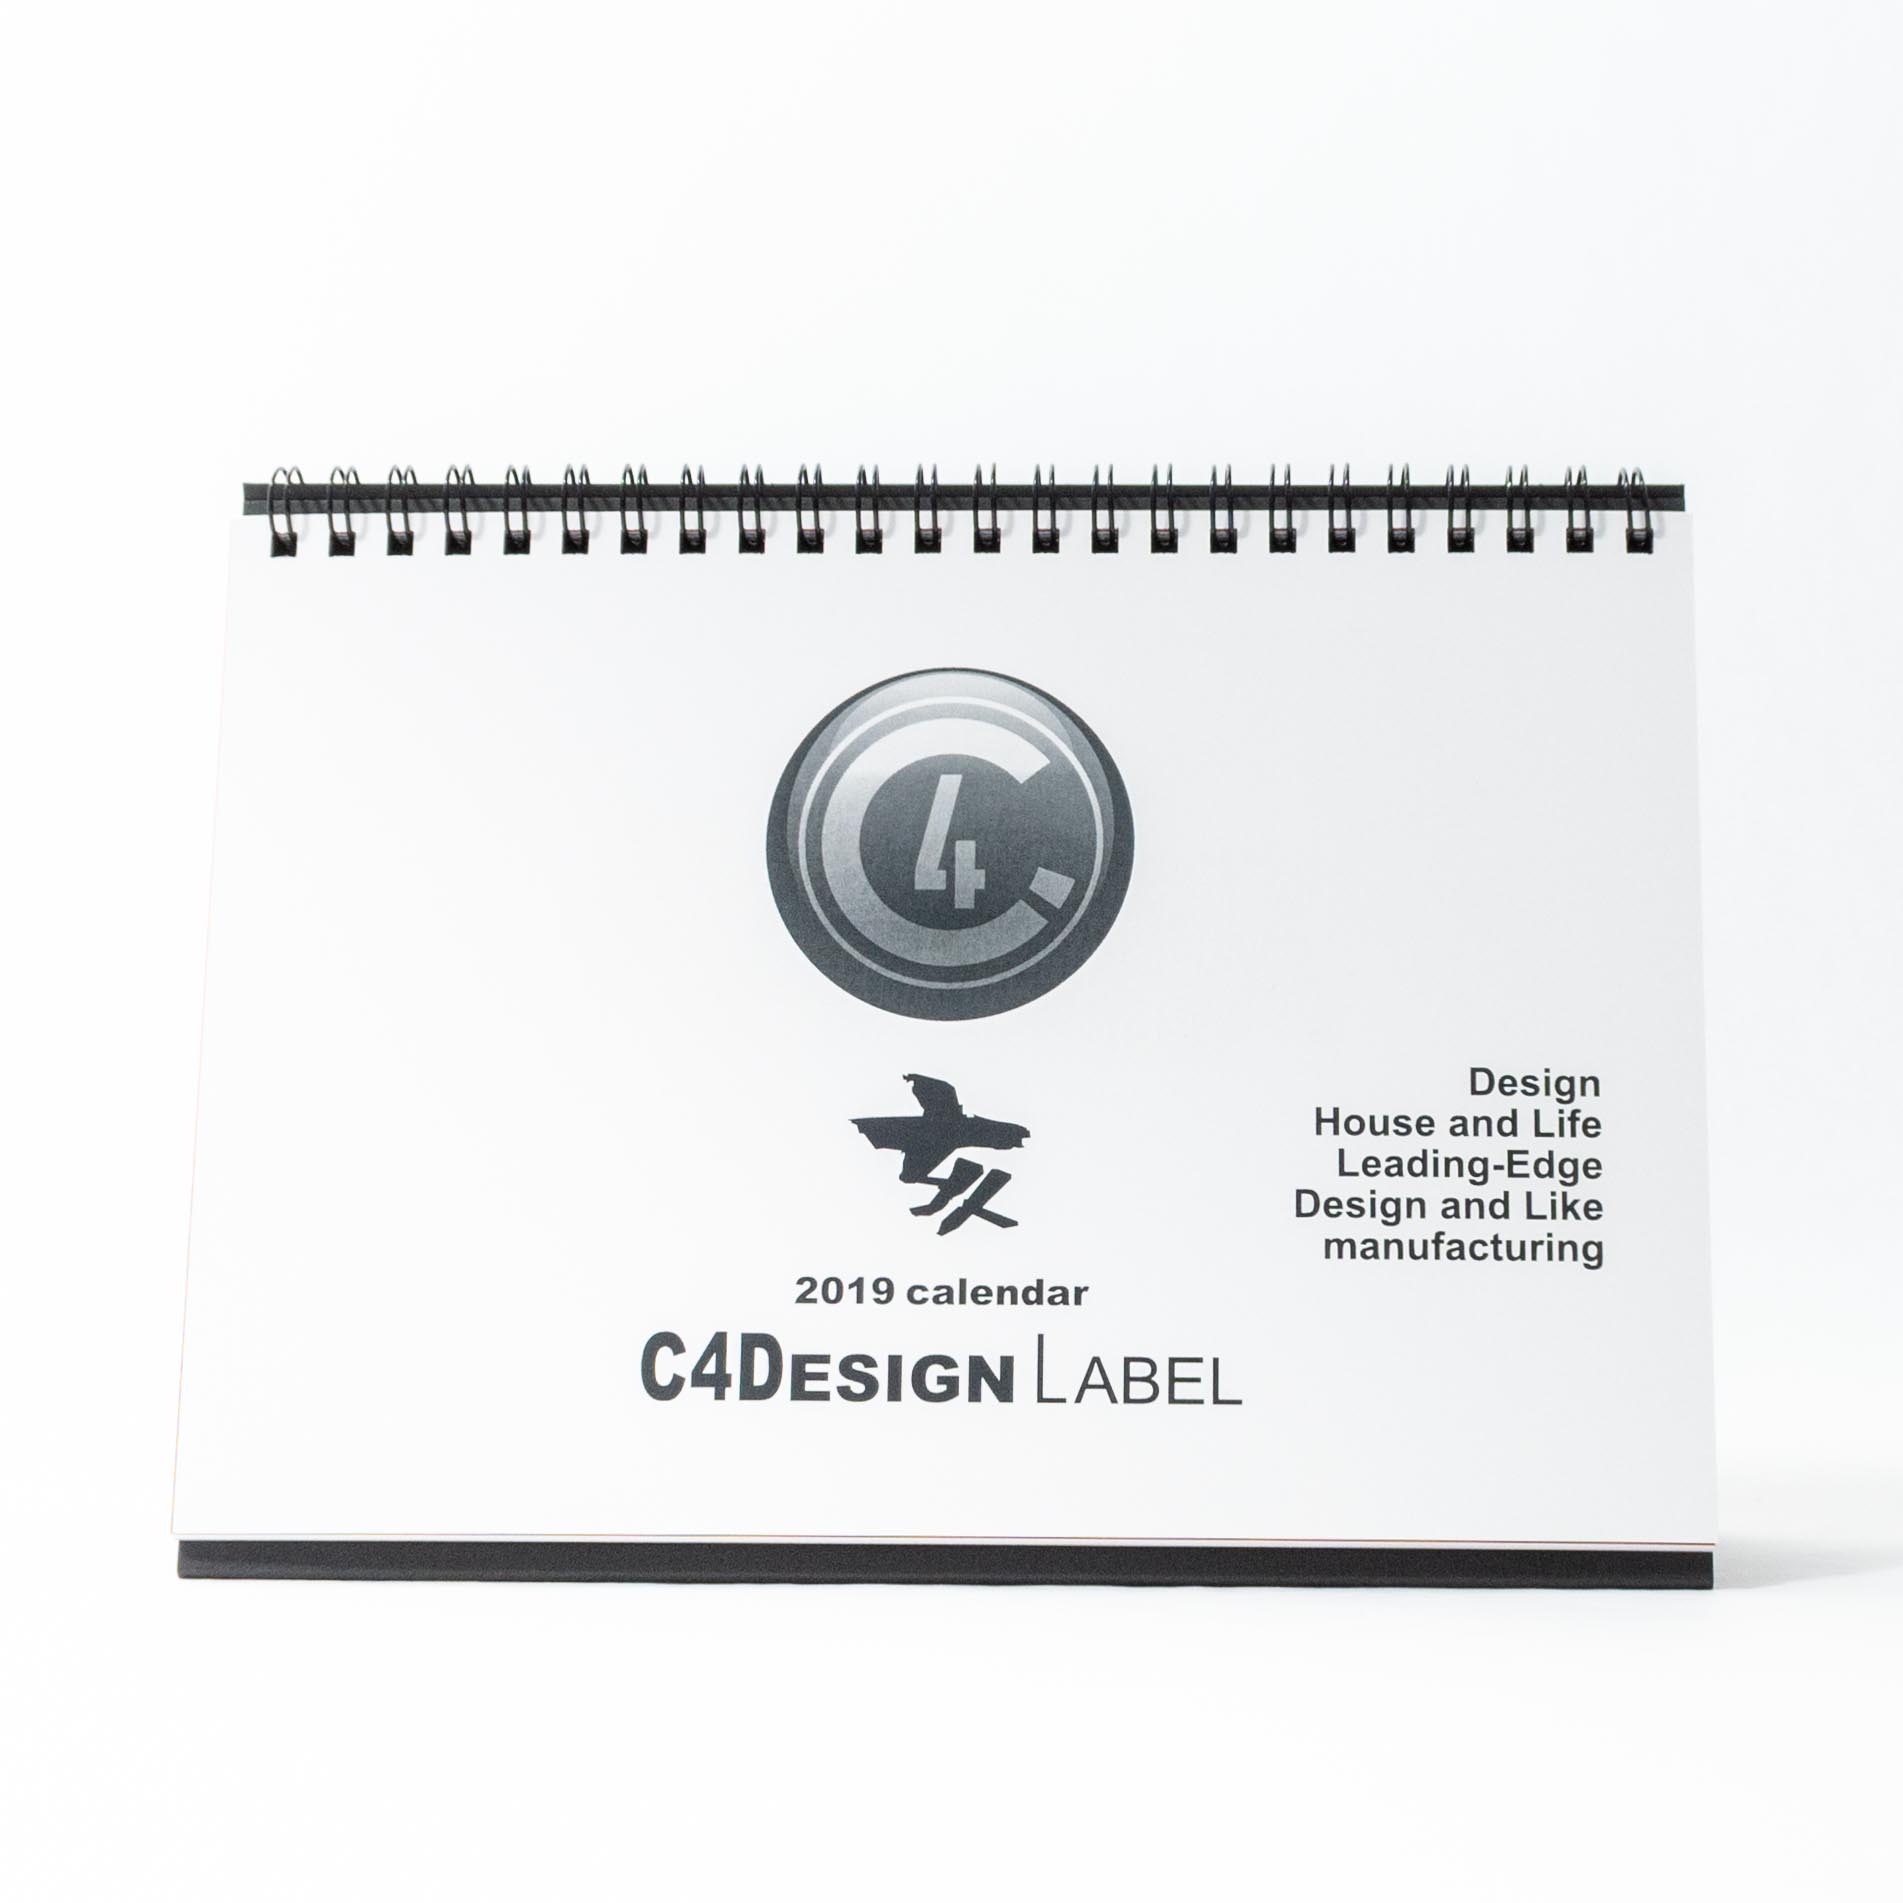 「株式会社シーフォーデザインレーベル 様」製作のオリジナルカレンダー